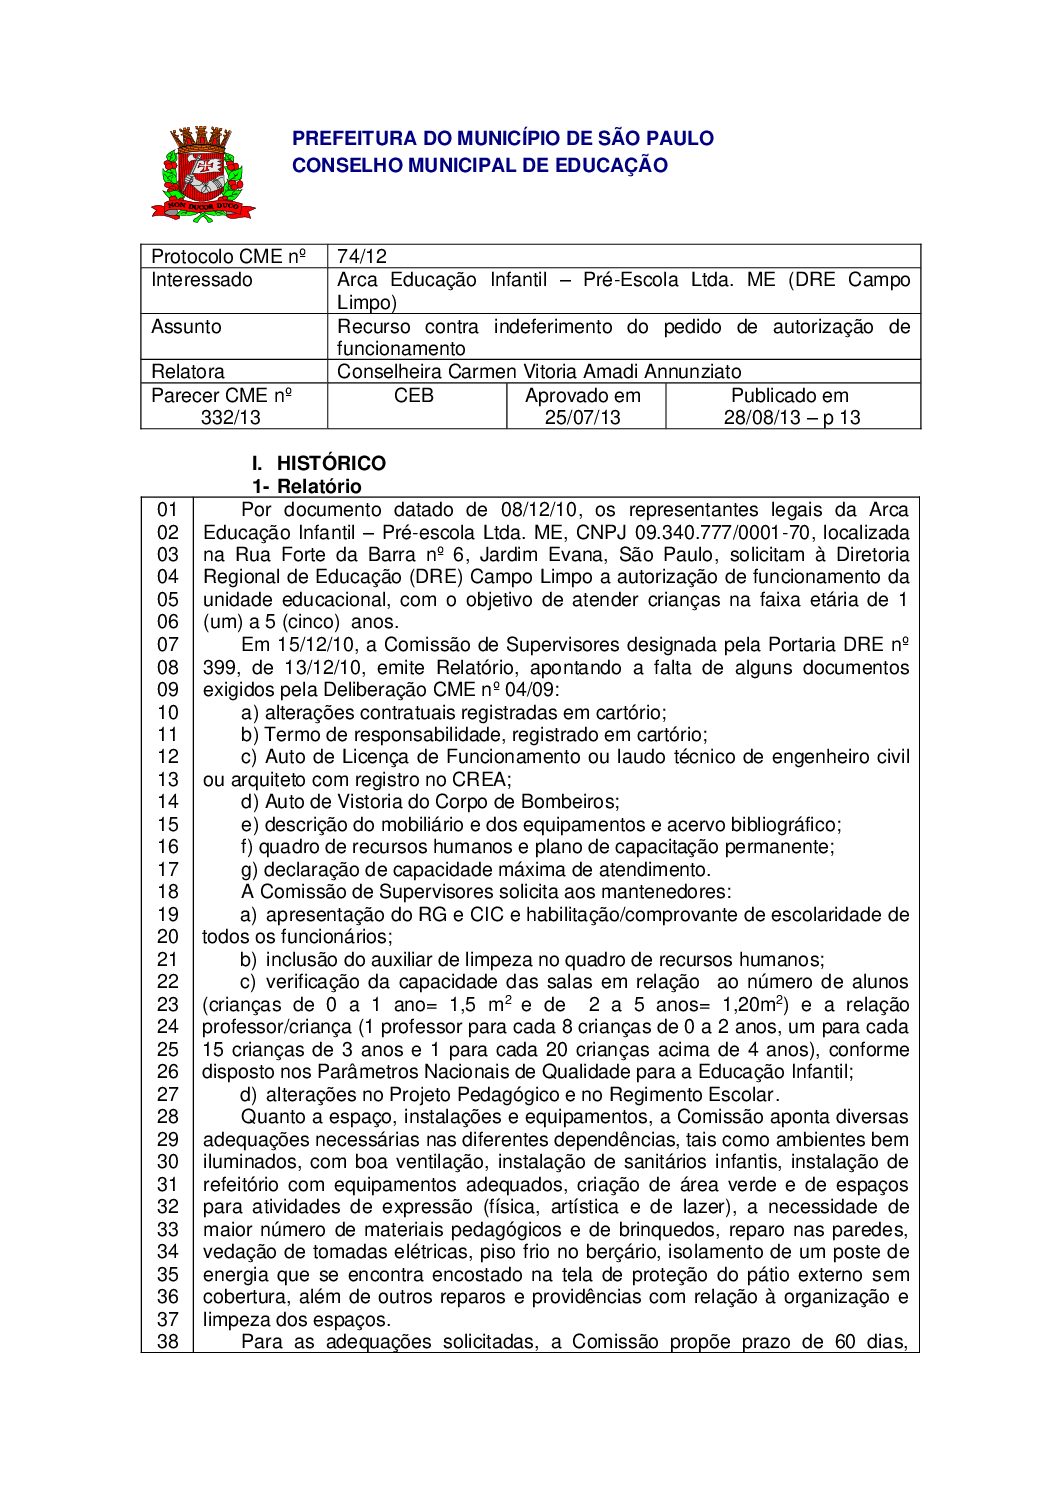 Parecer CME nº 332/2013 - Arca Educação Infantil Pré-Escola Ltda ME (DRE Campo Limpo) - Recurso contra indeferimento do pedido de autorização de funcionamento 